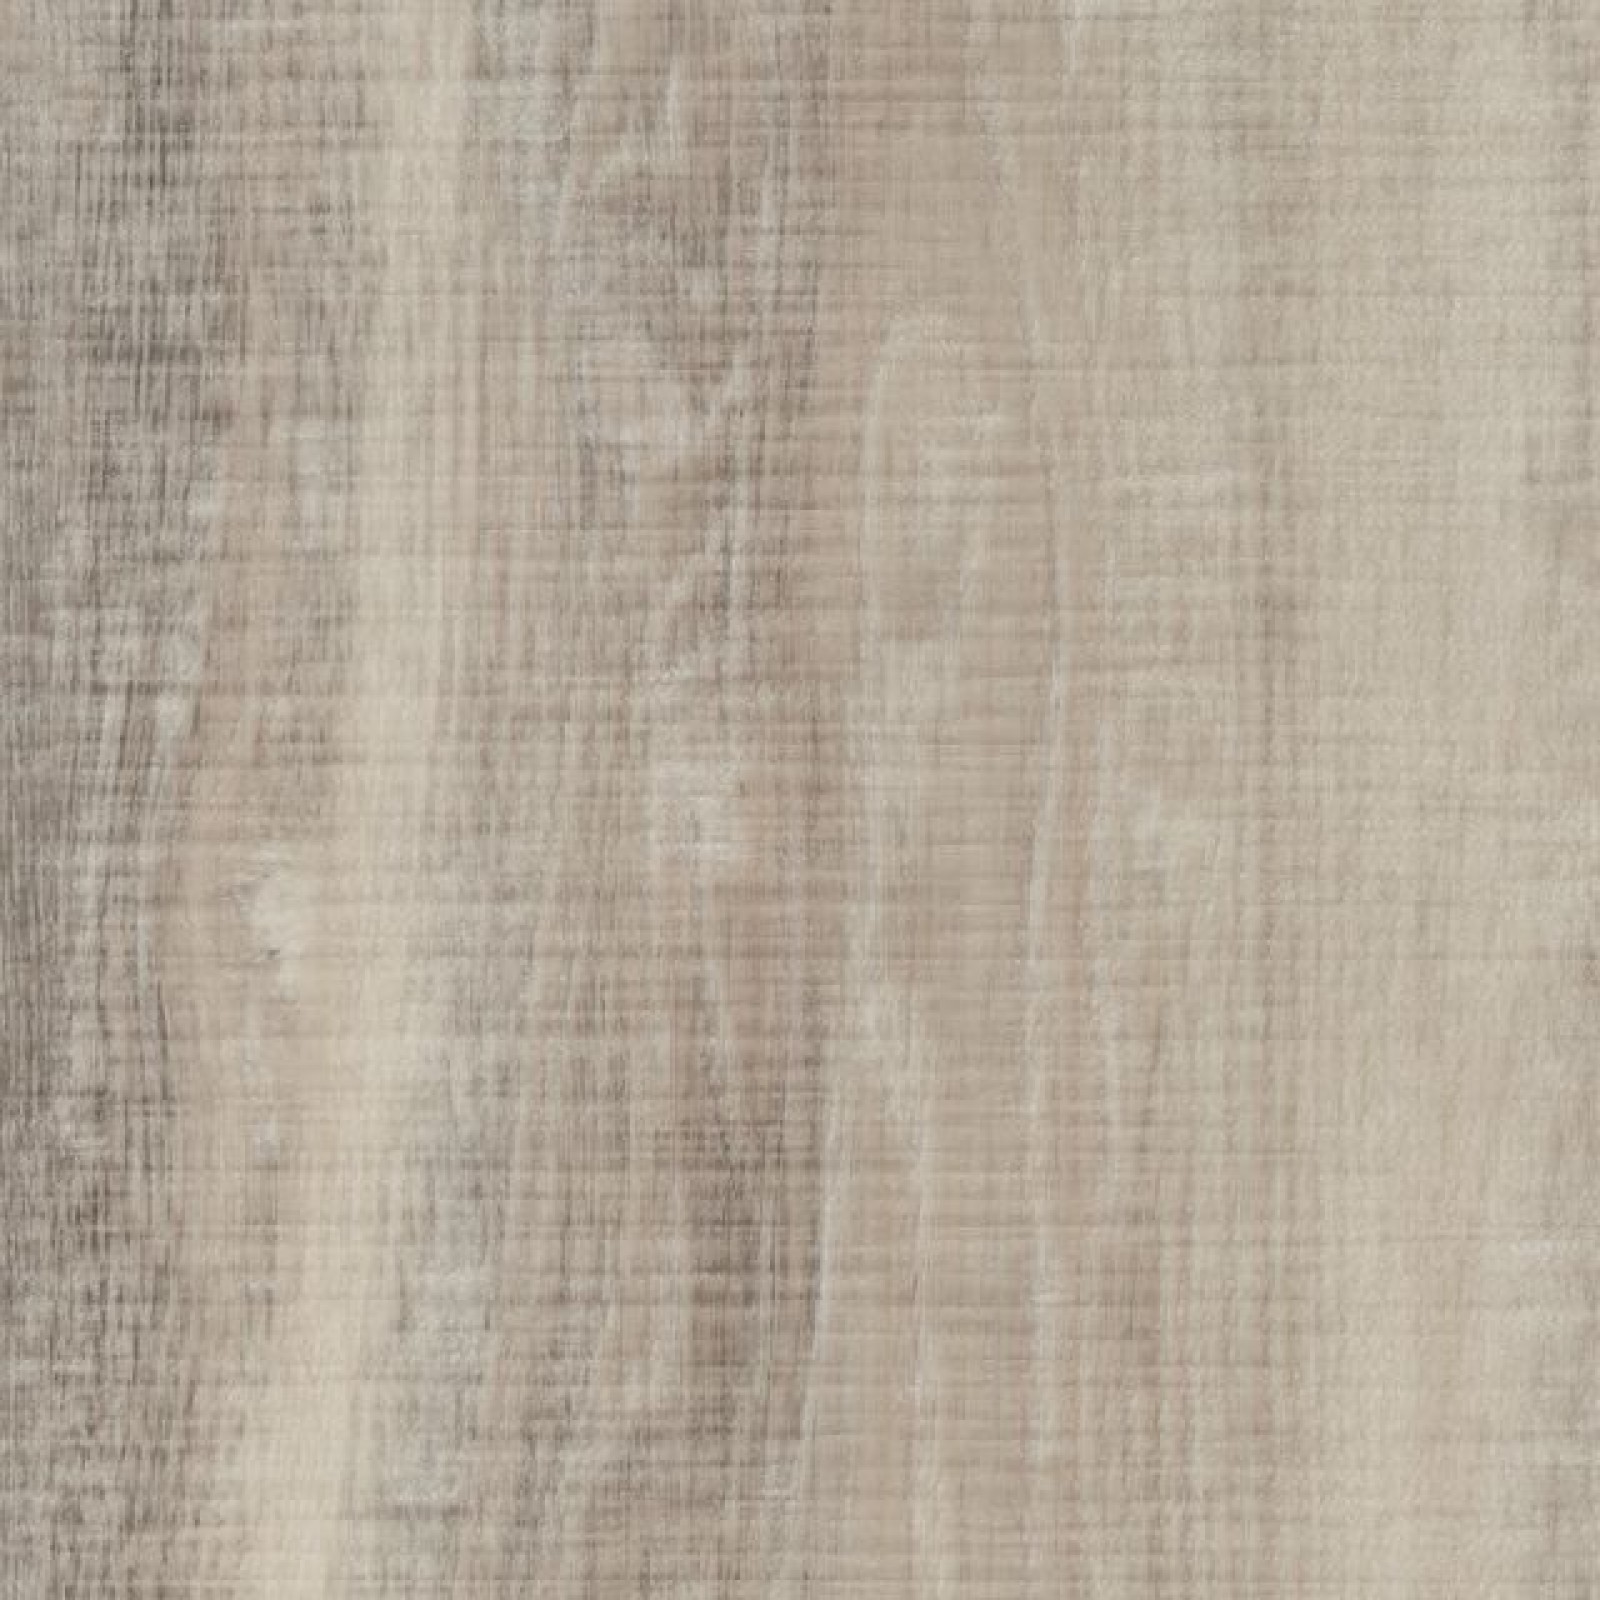 Vzor - 60151DR white raw timber